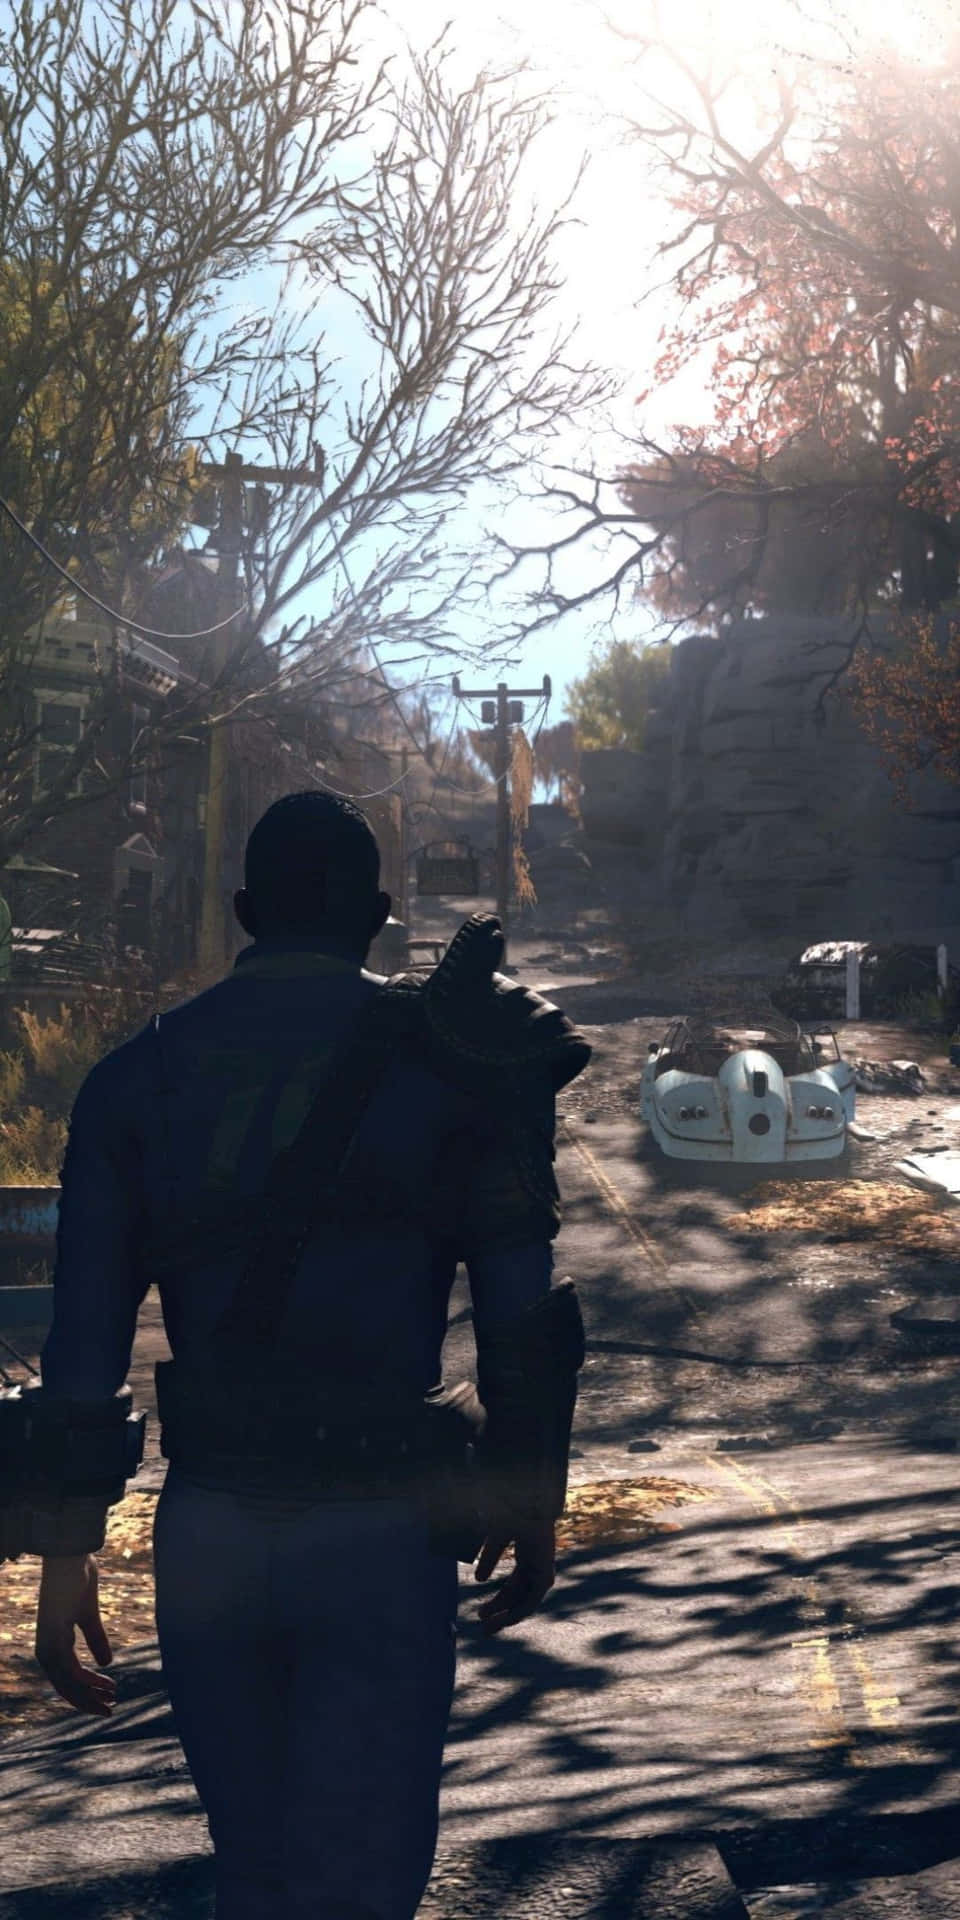 Pixel3 Och Fallout 76 - Episk Spelnjutning.